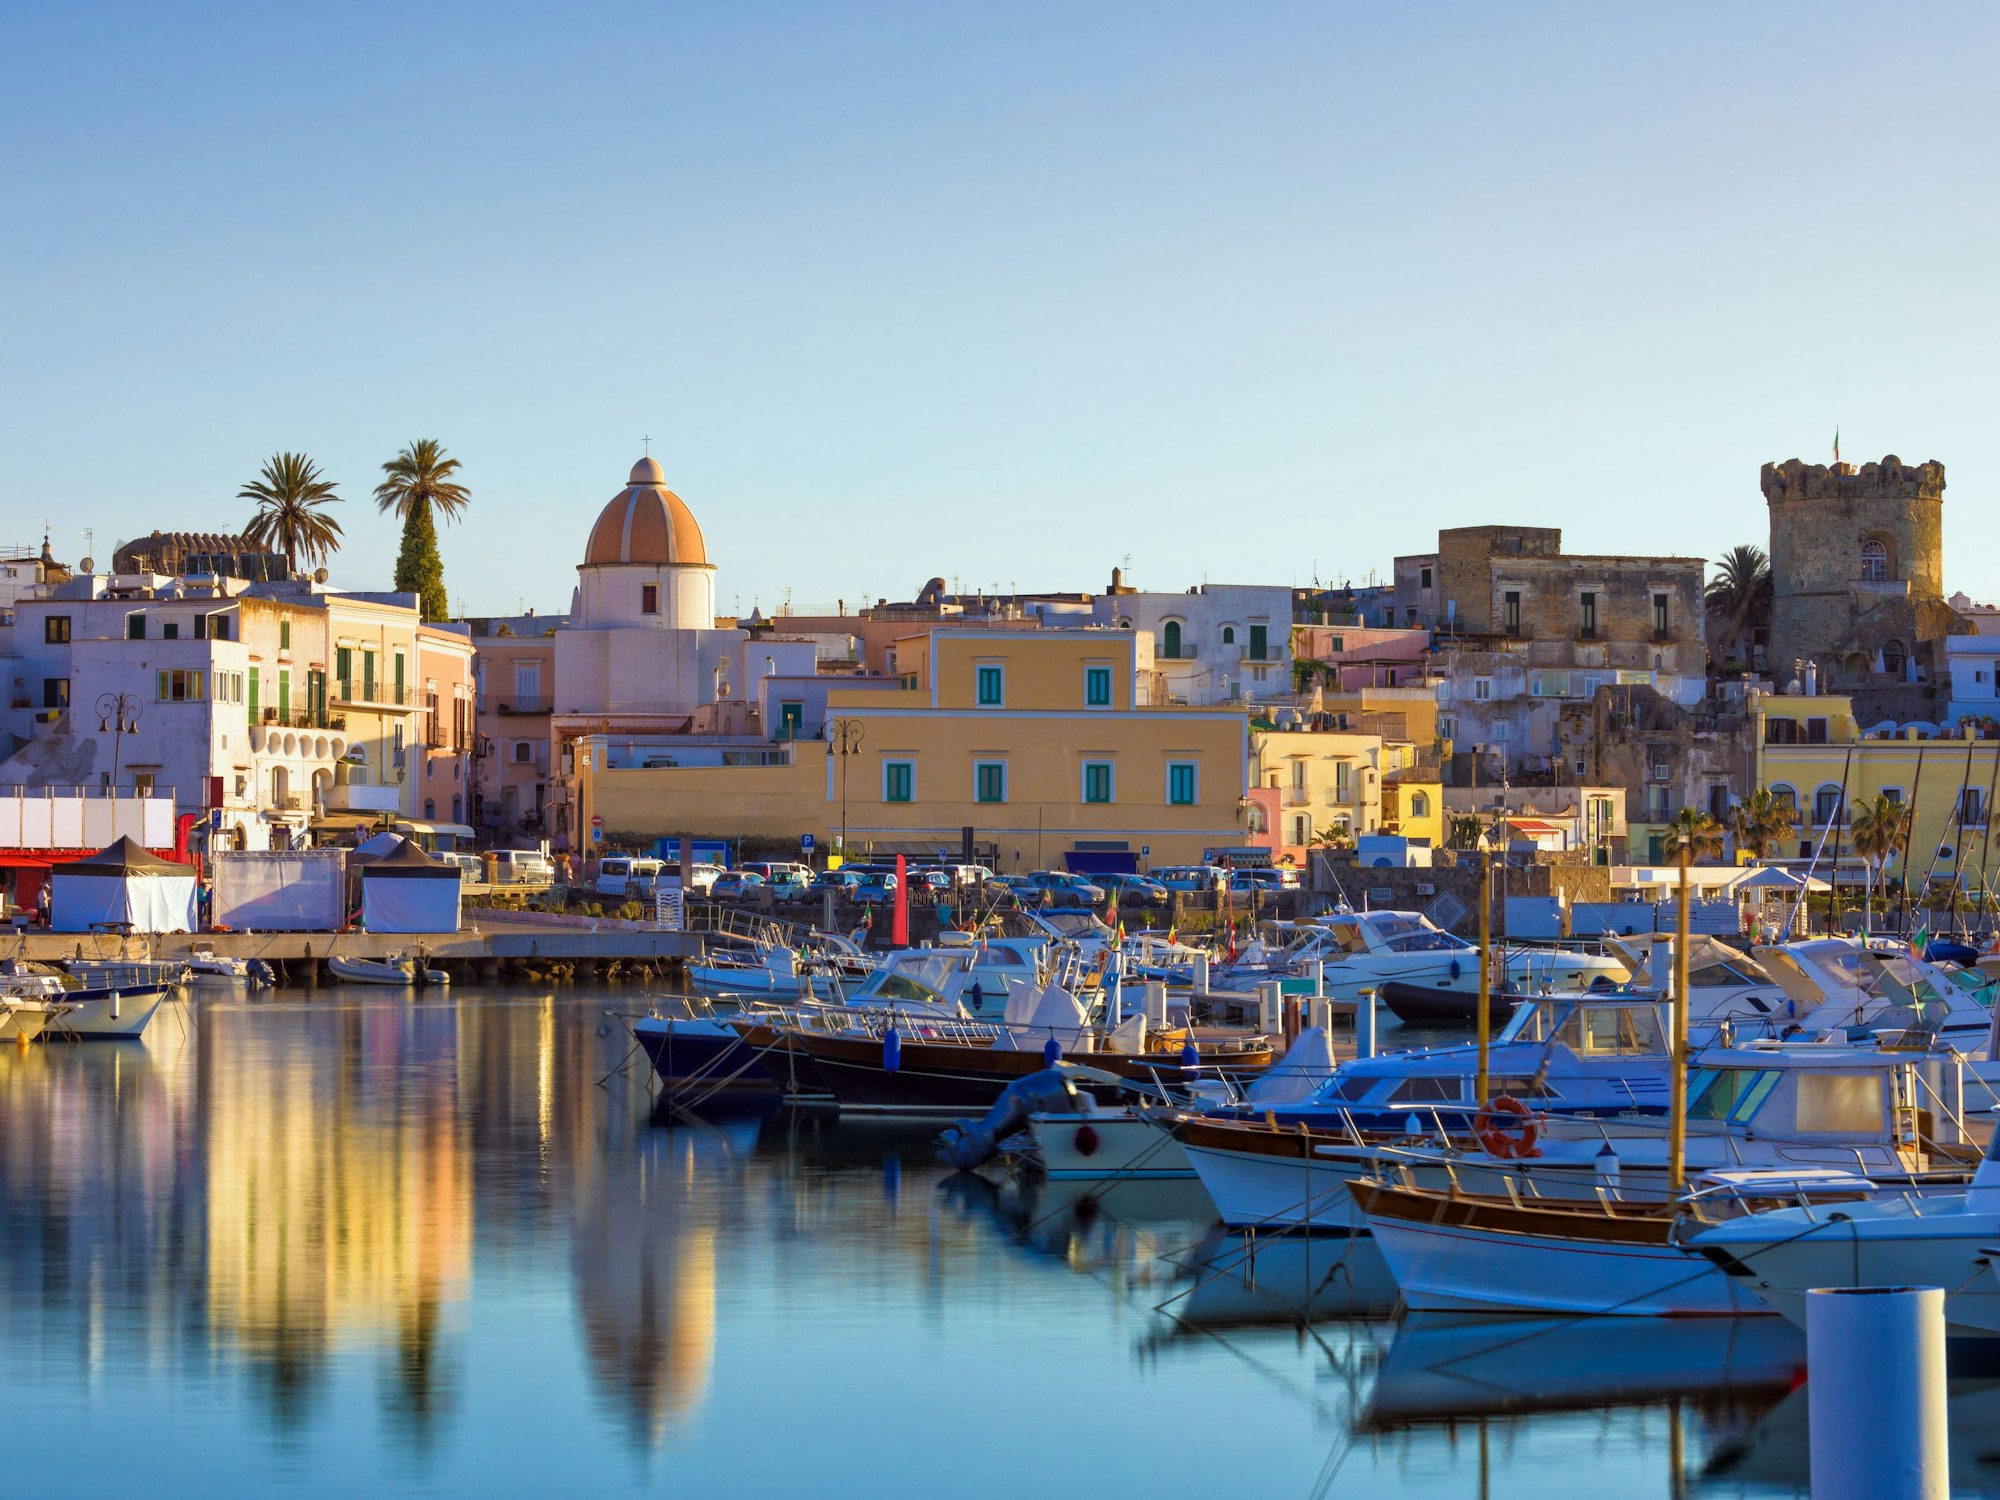 Der Hafen der Stadt Forio auf der italienischen Insel Ischia. Im Vordergrund sind einige ankernde Boote zu sehen, im Hintergrund die bunten Häuser der Stadt.